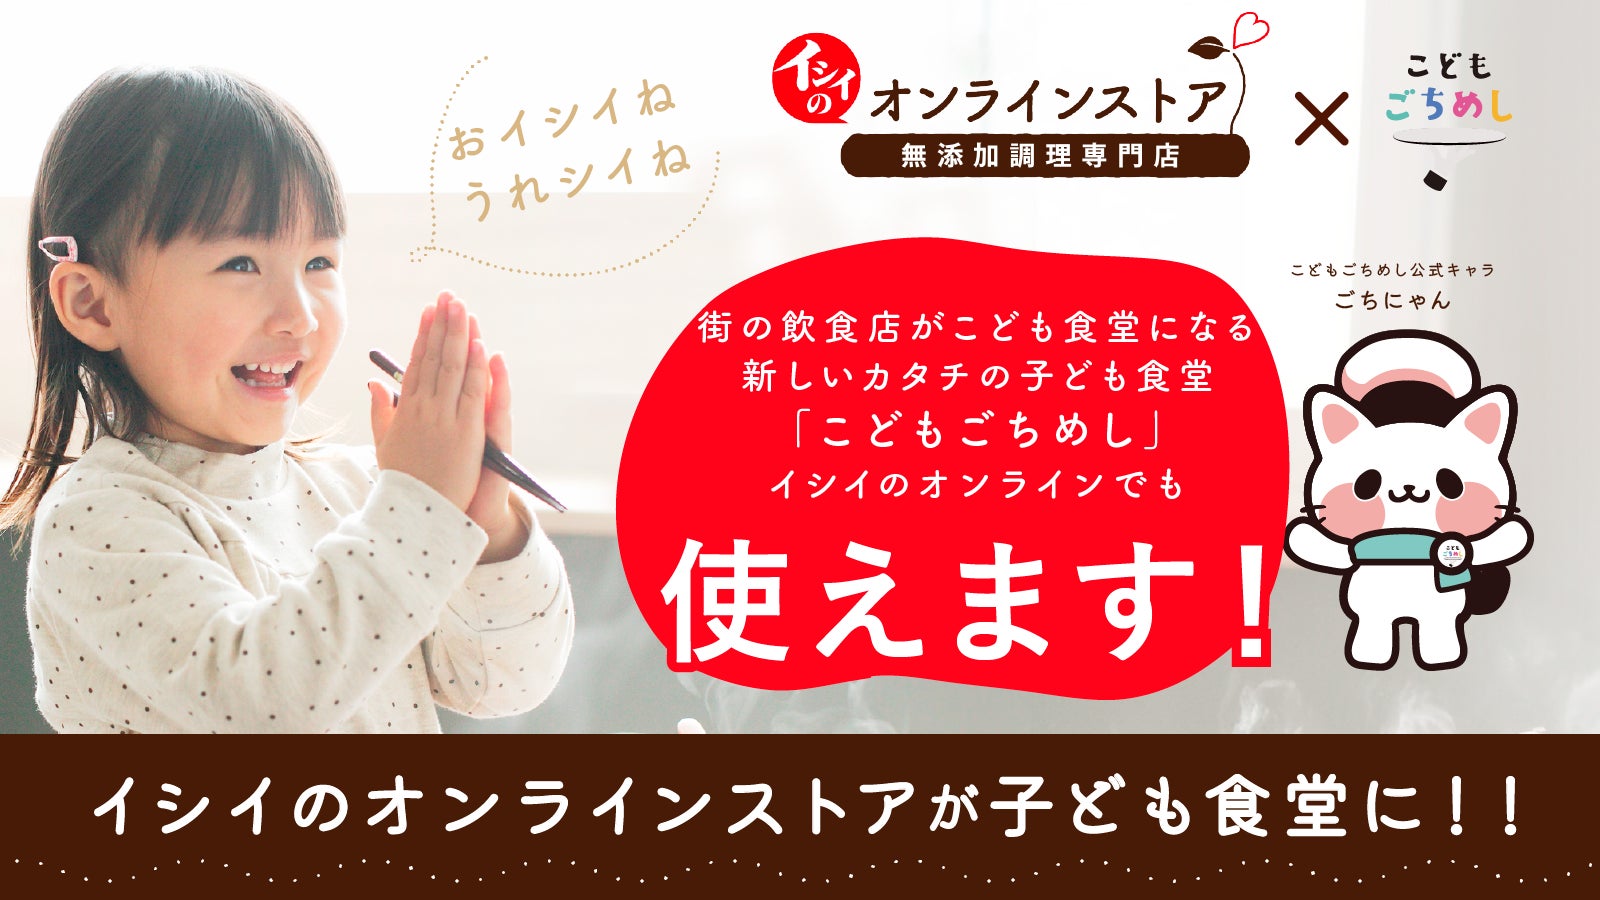 ”子育て応援”を掲げる石井食品様の「イシイのオンラインストア」にて8月1日より、こどもごちめし利用スタート！